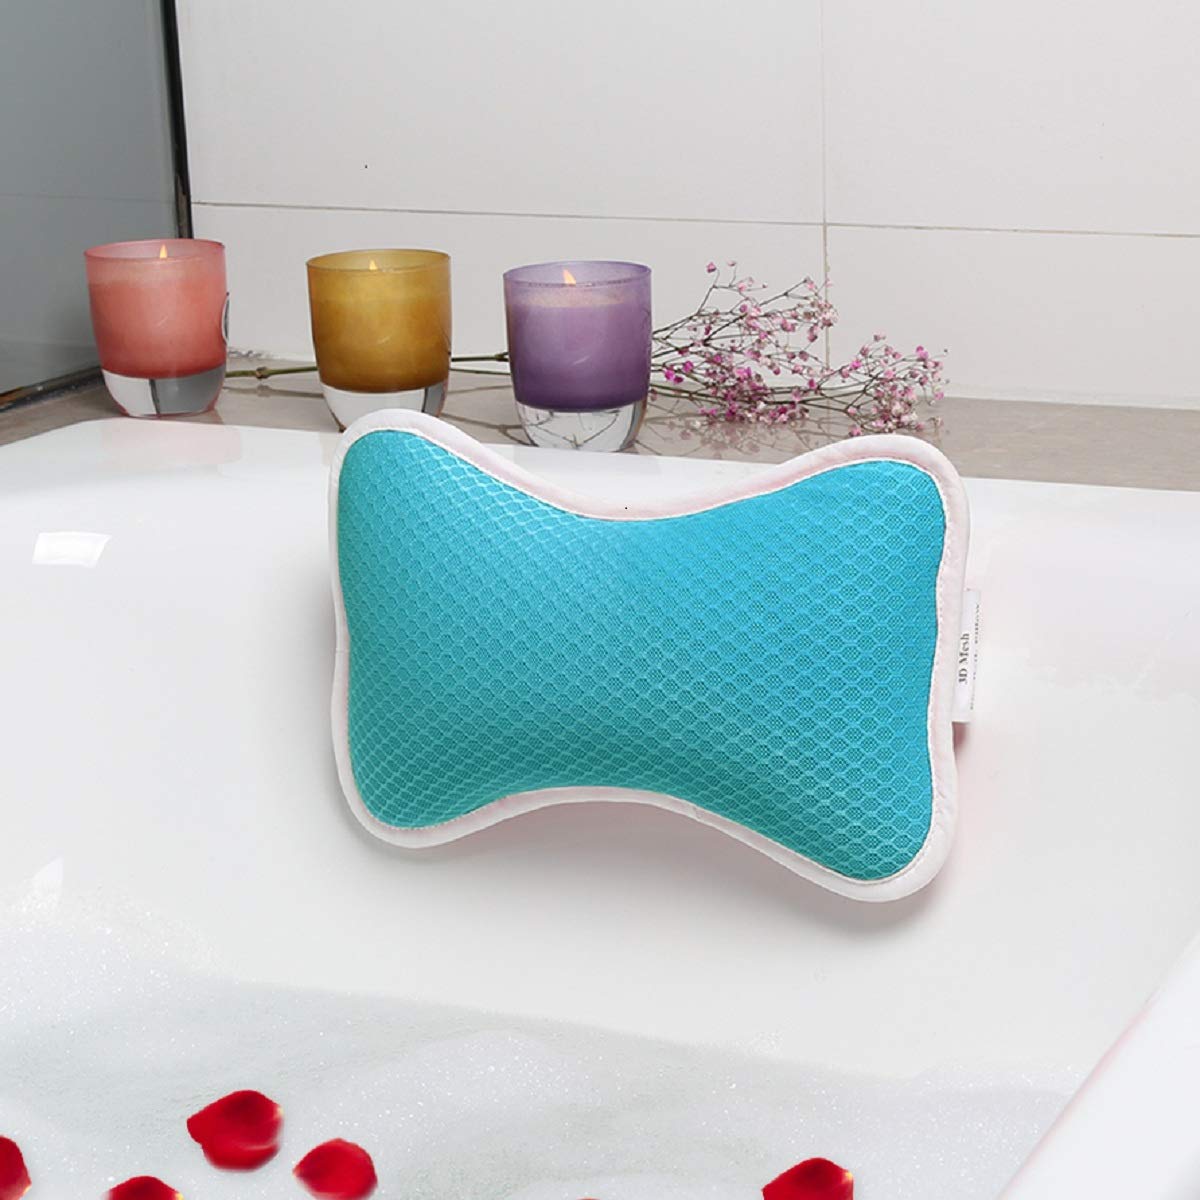 Best  Bath Pillow: AmazeFan Bath Pillow Review